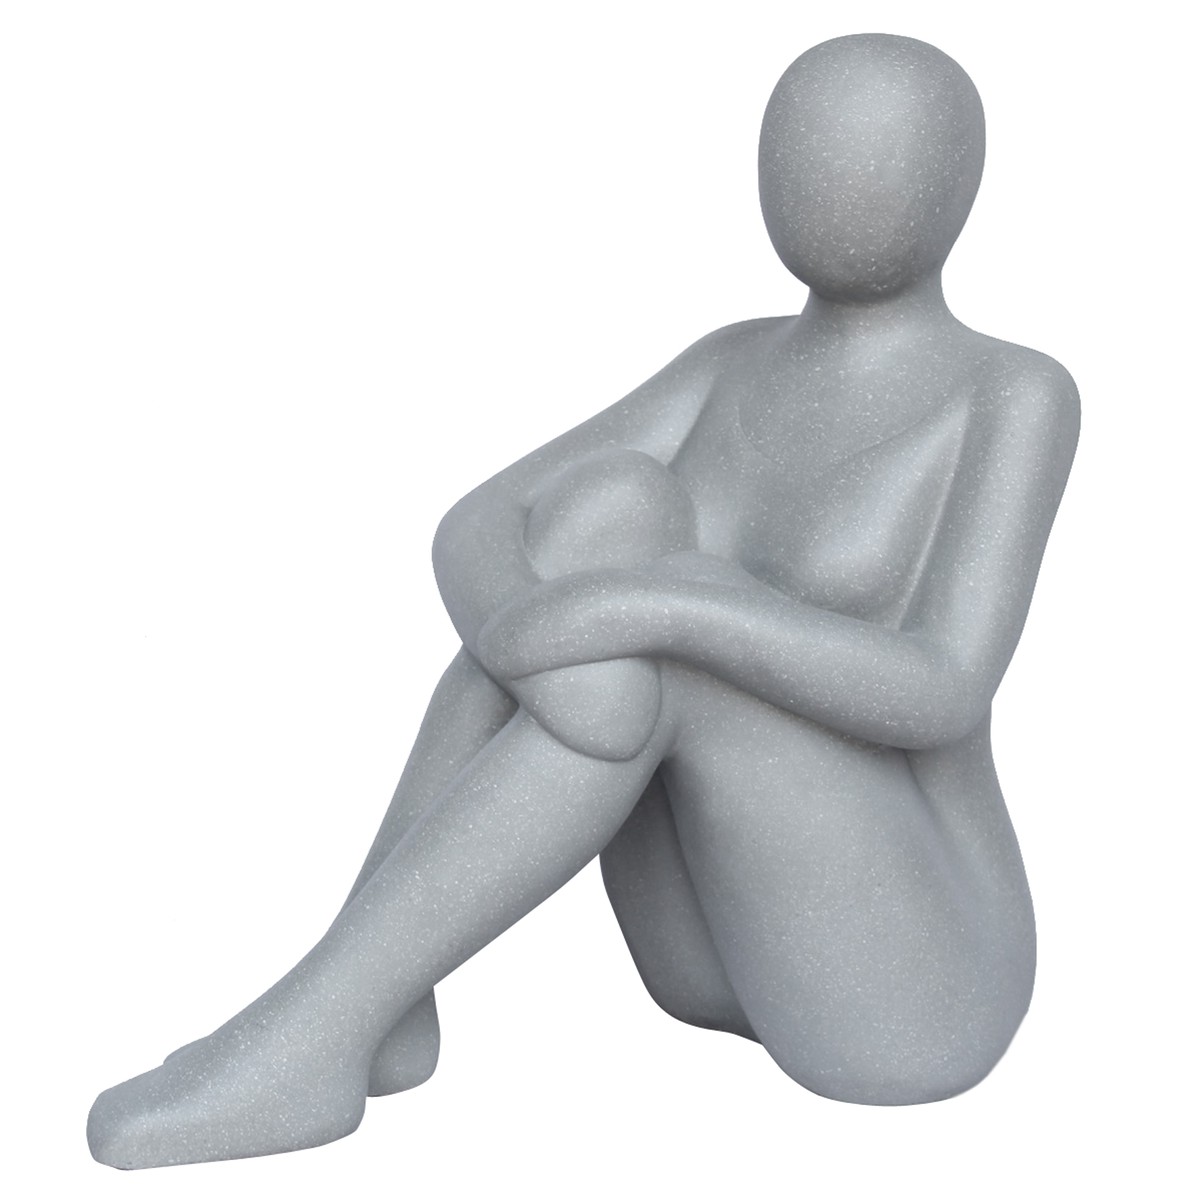   Deco femme assise polystone Gris 53x56.5cm